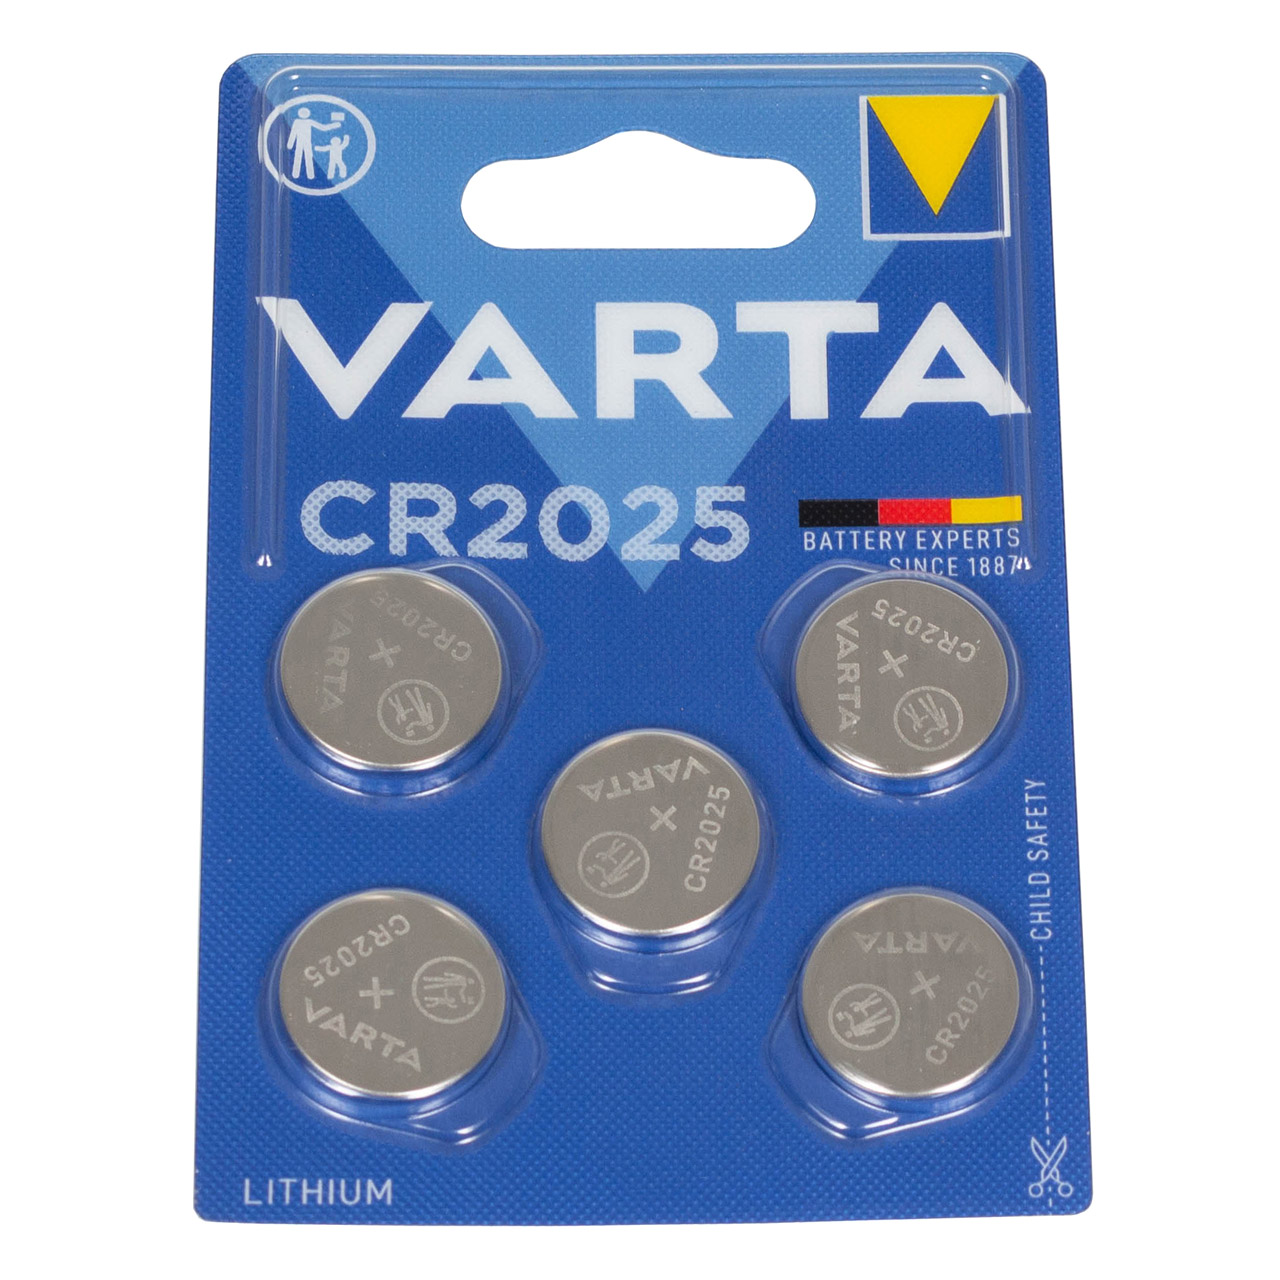 50x VARTA Lithium 3V CR2025 Knopfzelle Knopfbatterie Batterie (MHD 09.2033)